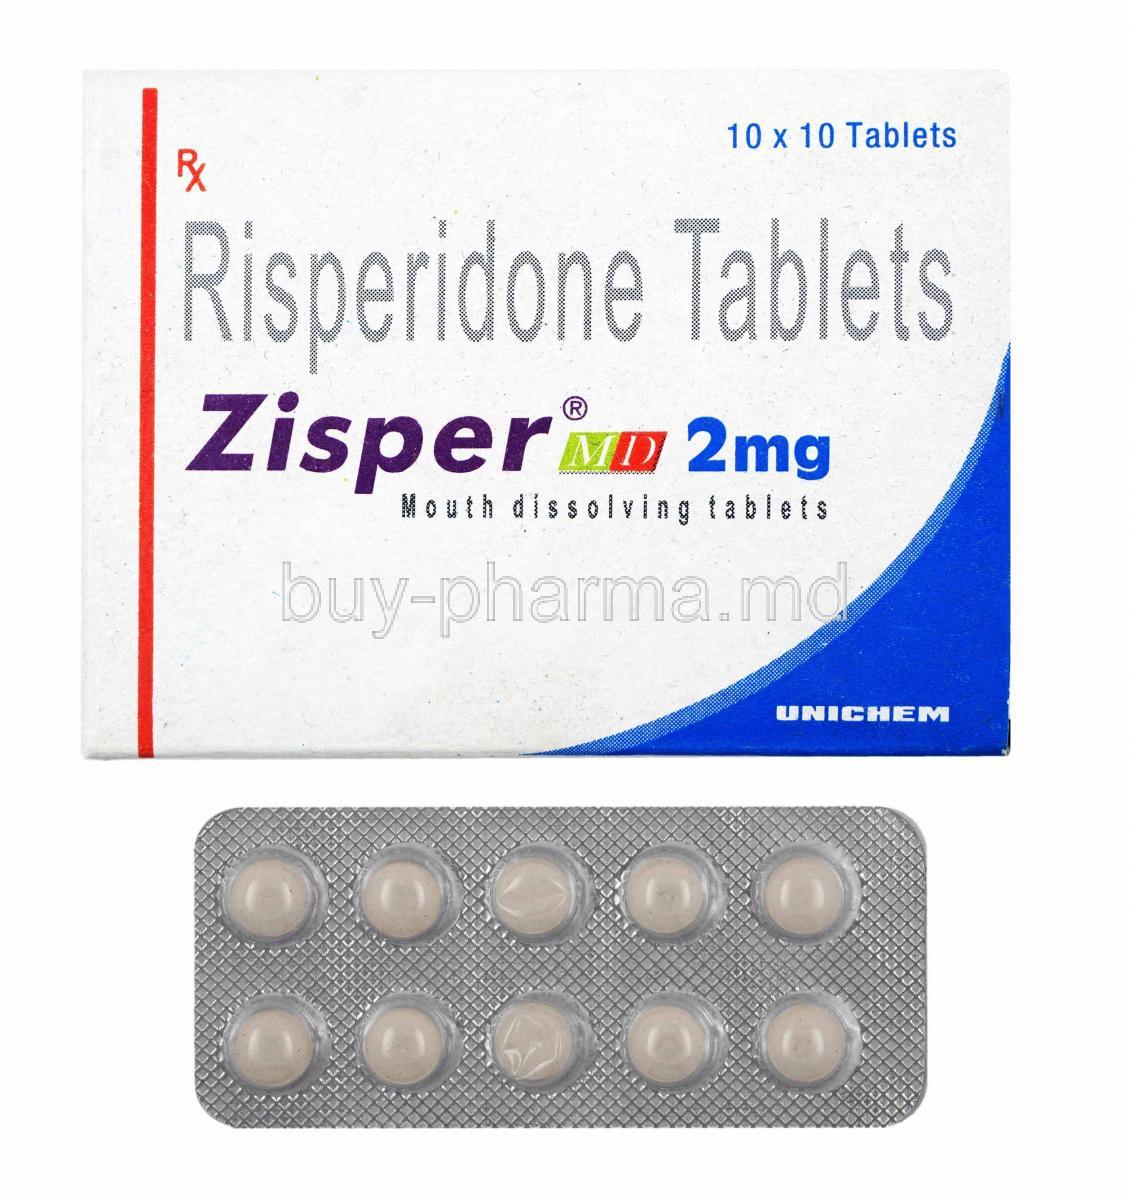 Zisper, Risperidone 2mg box and tablets